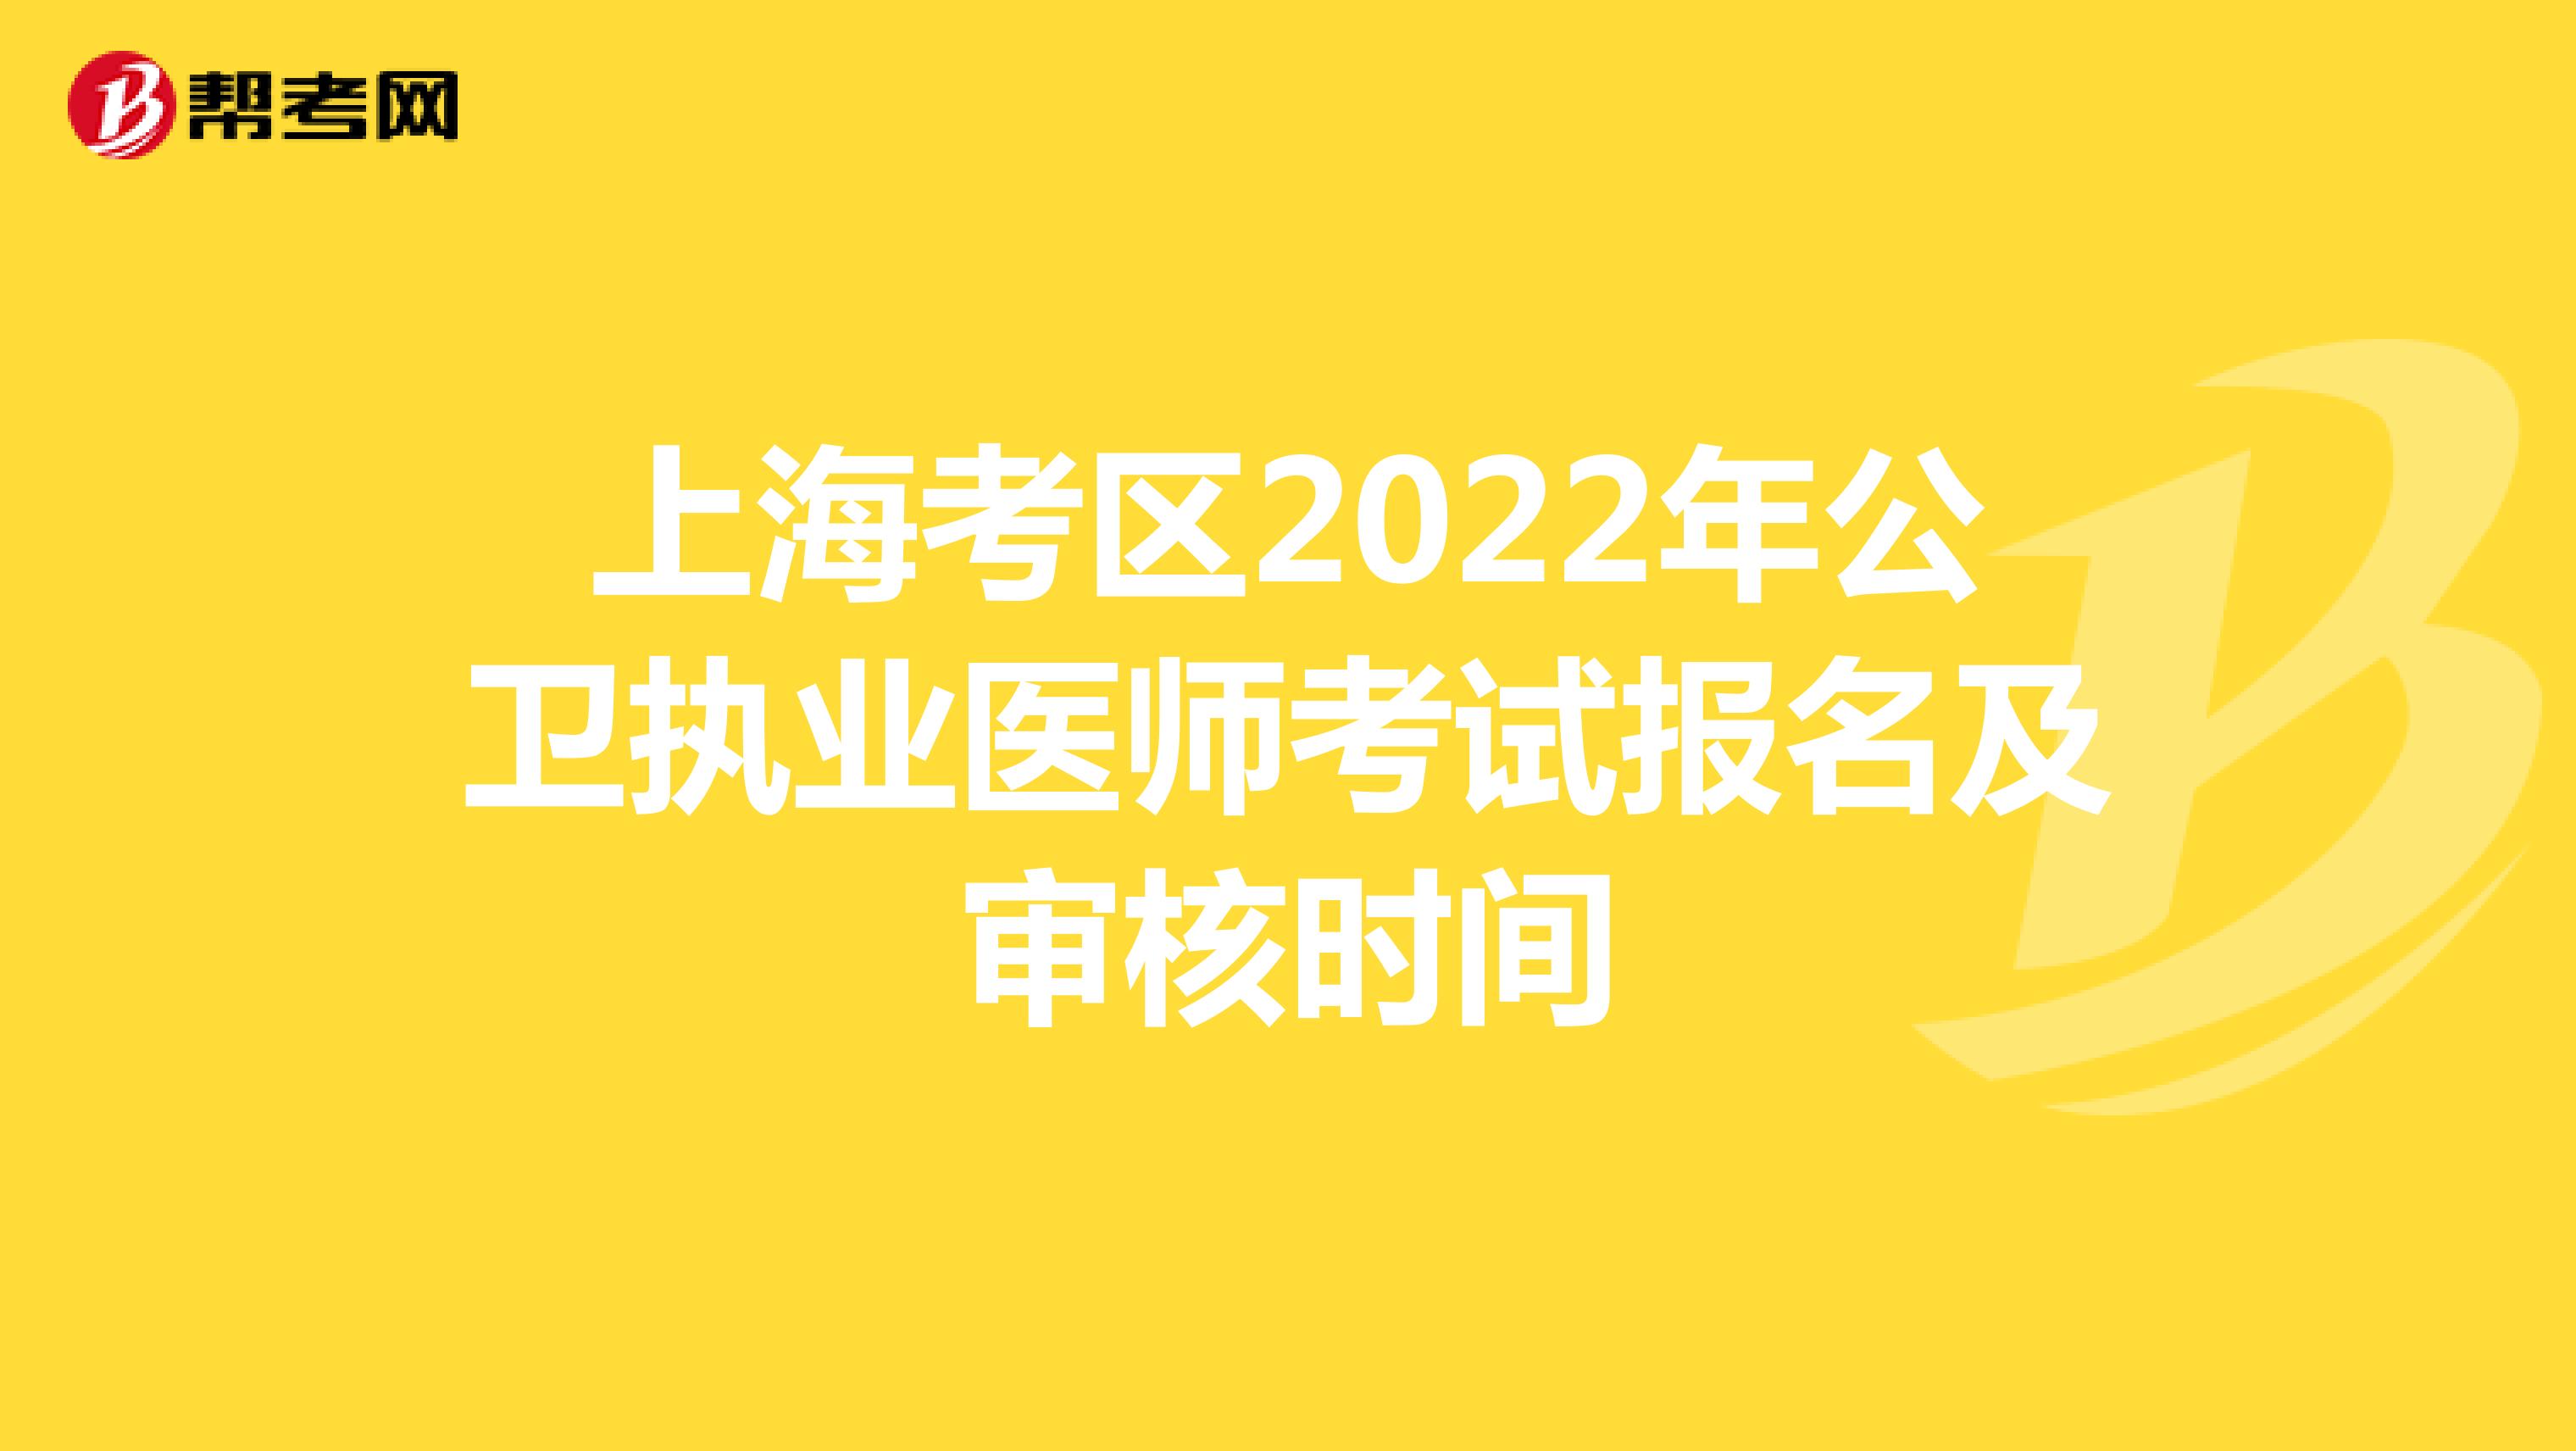 上海考区2022年公卫执业医师考试报名及审核时间